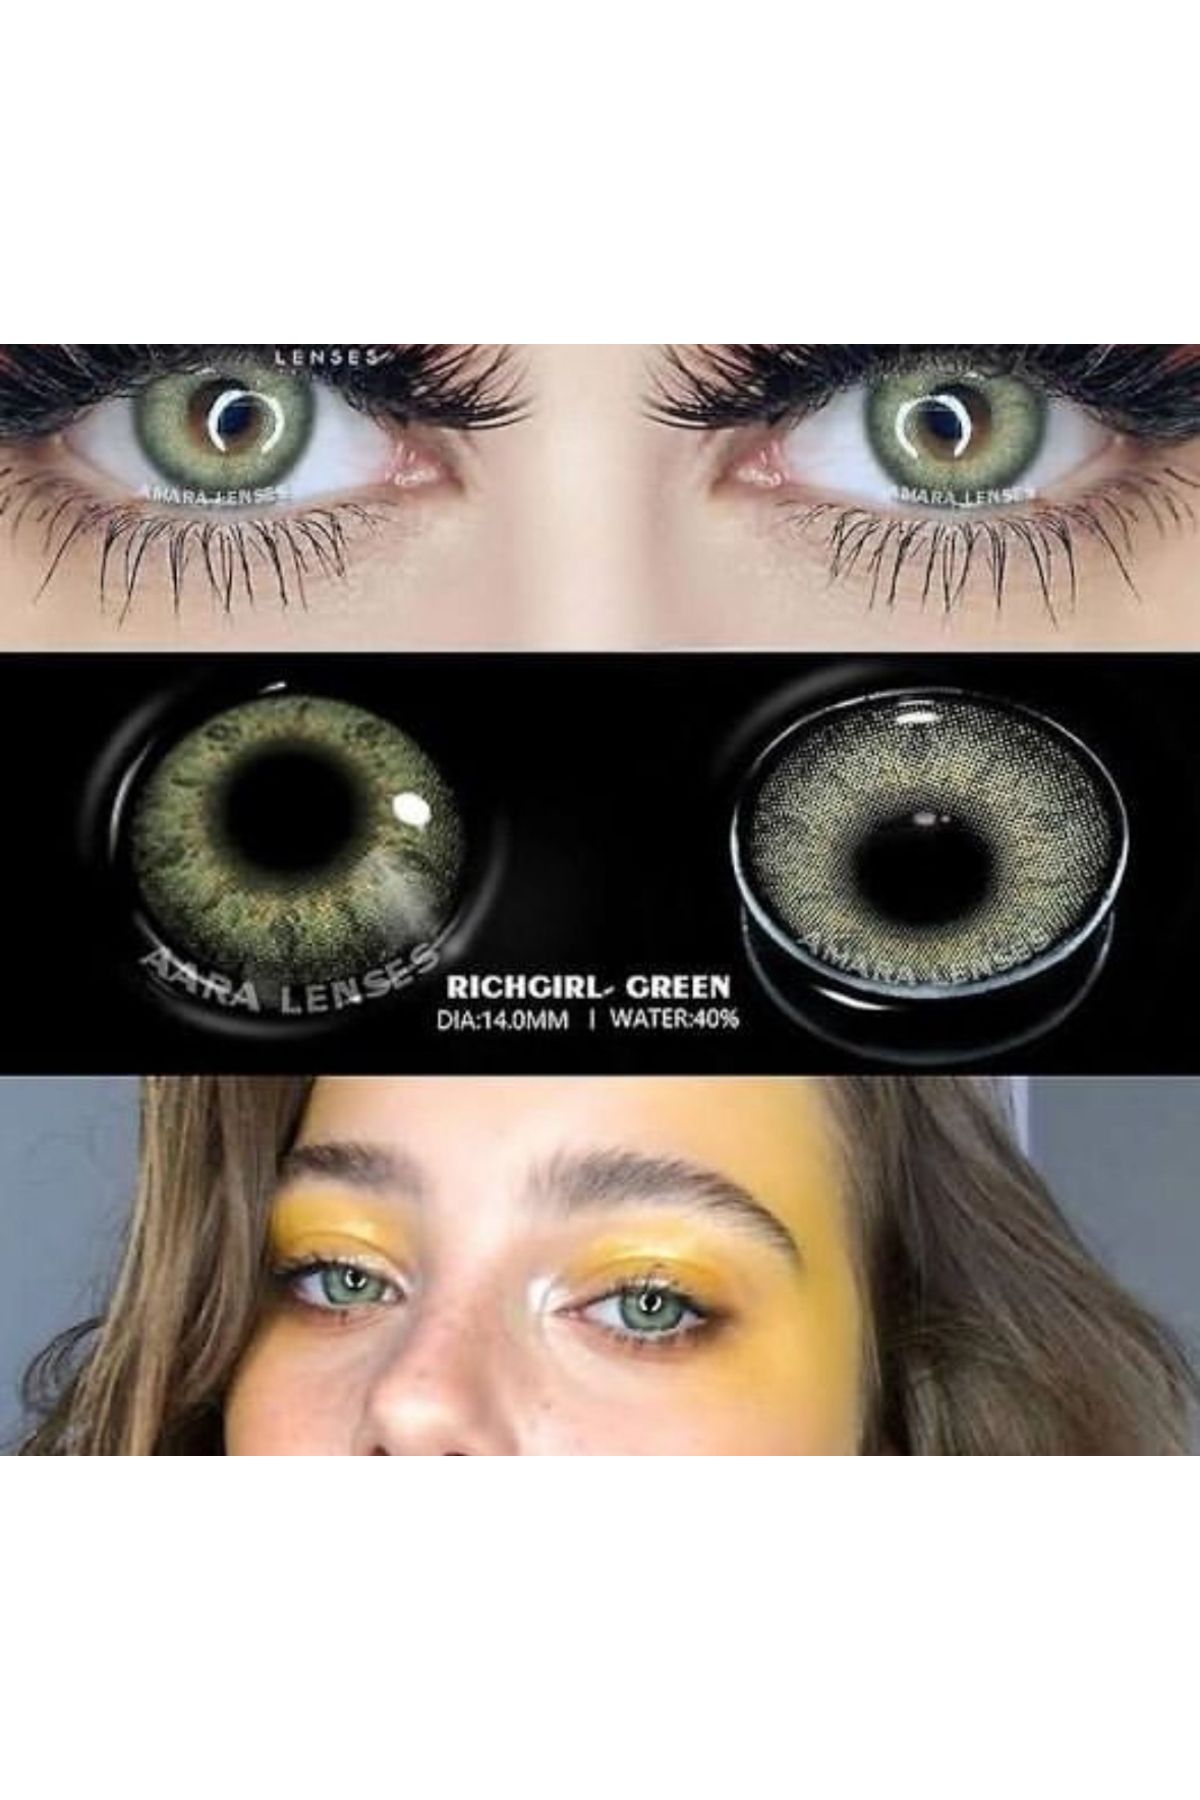 ROWENAROSE 1 Yıllık Numarasız Lens 12 Ay Kullanım Süreli Rich Girl Green Hareli Yeşil Ksseye Lens